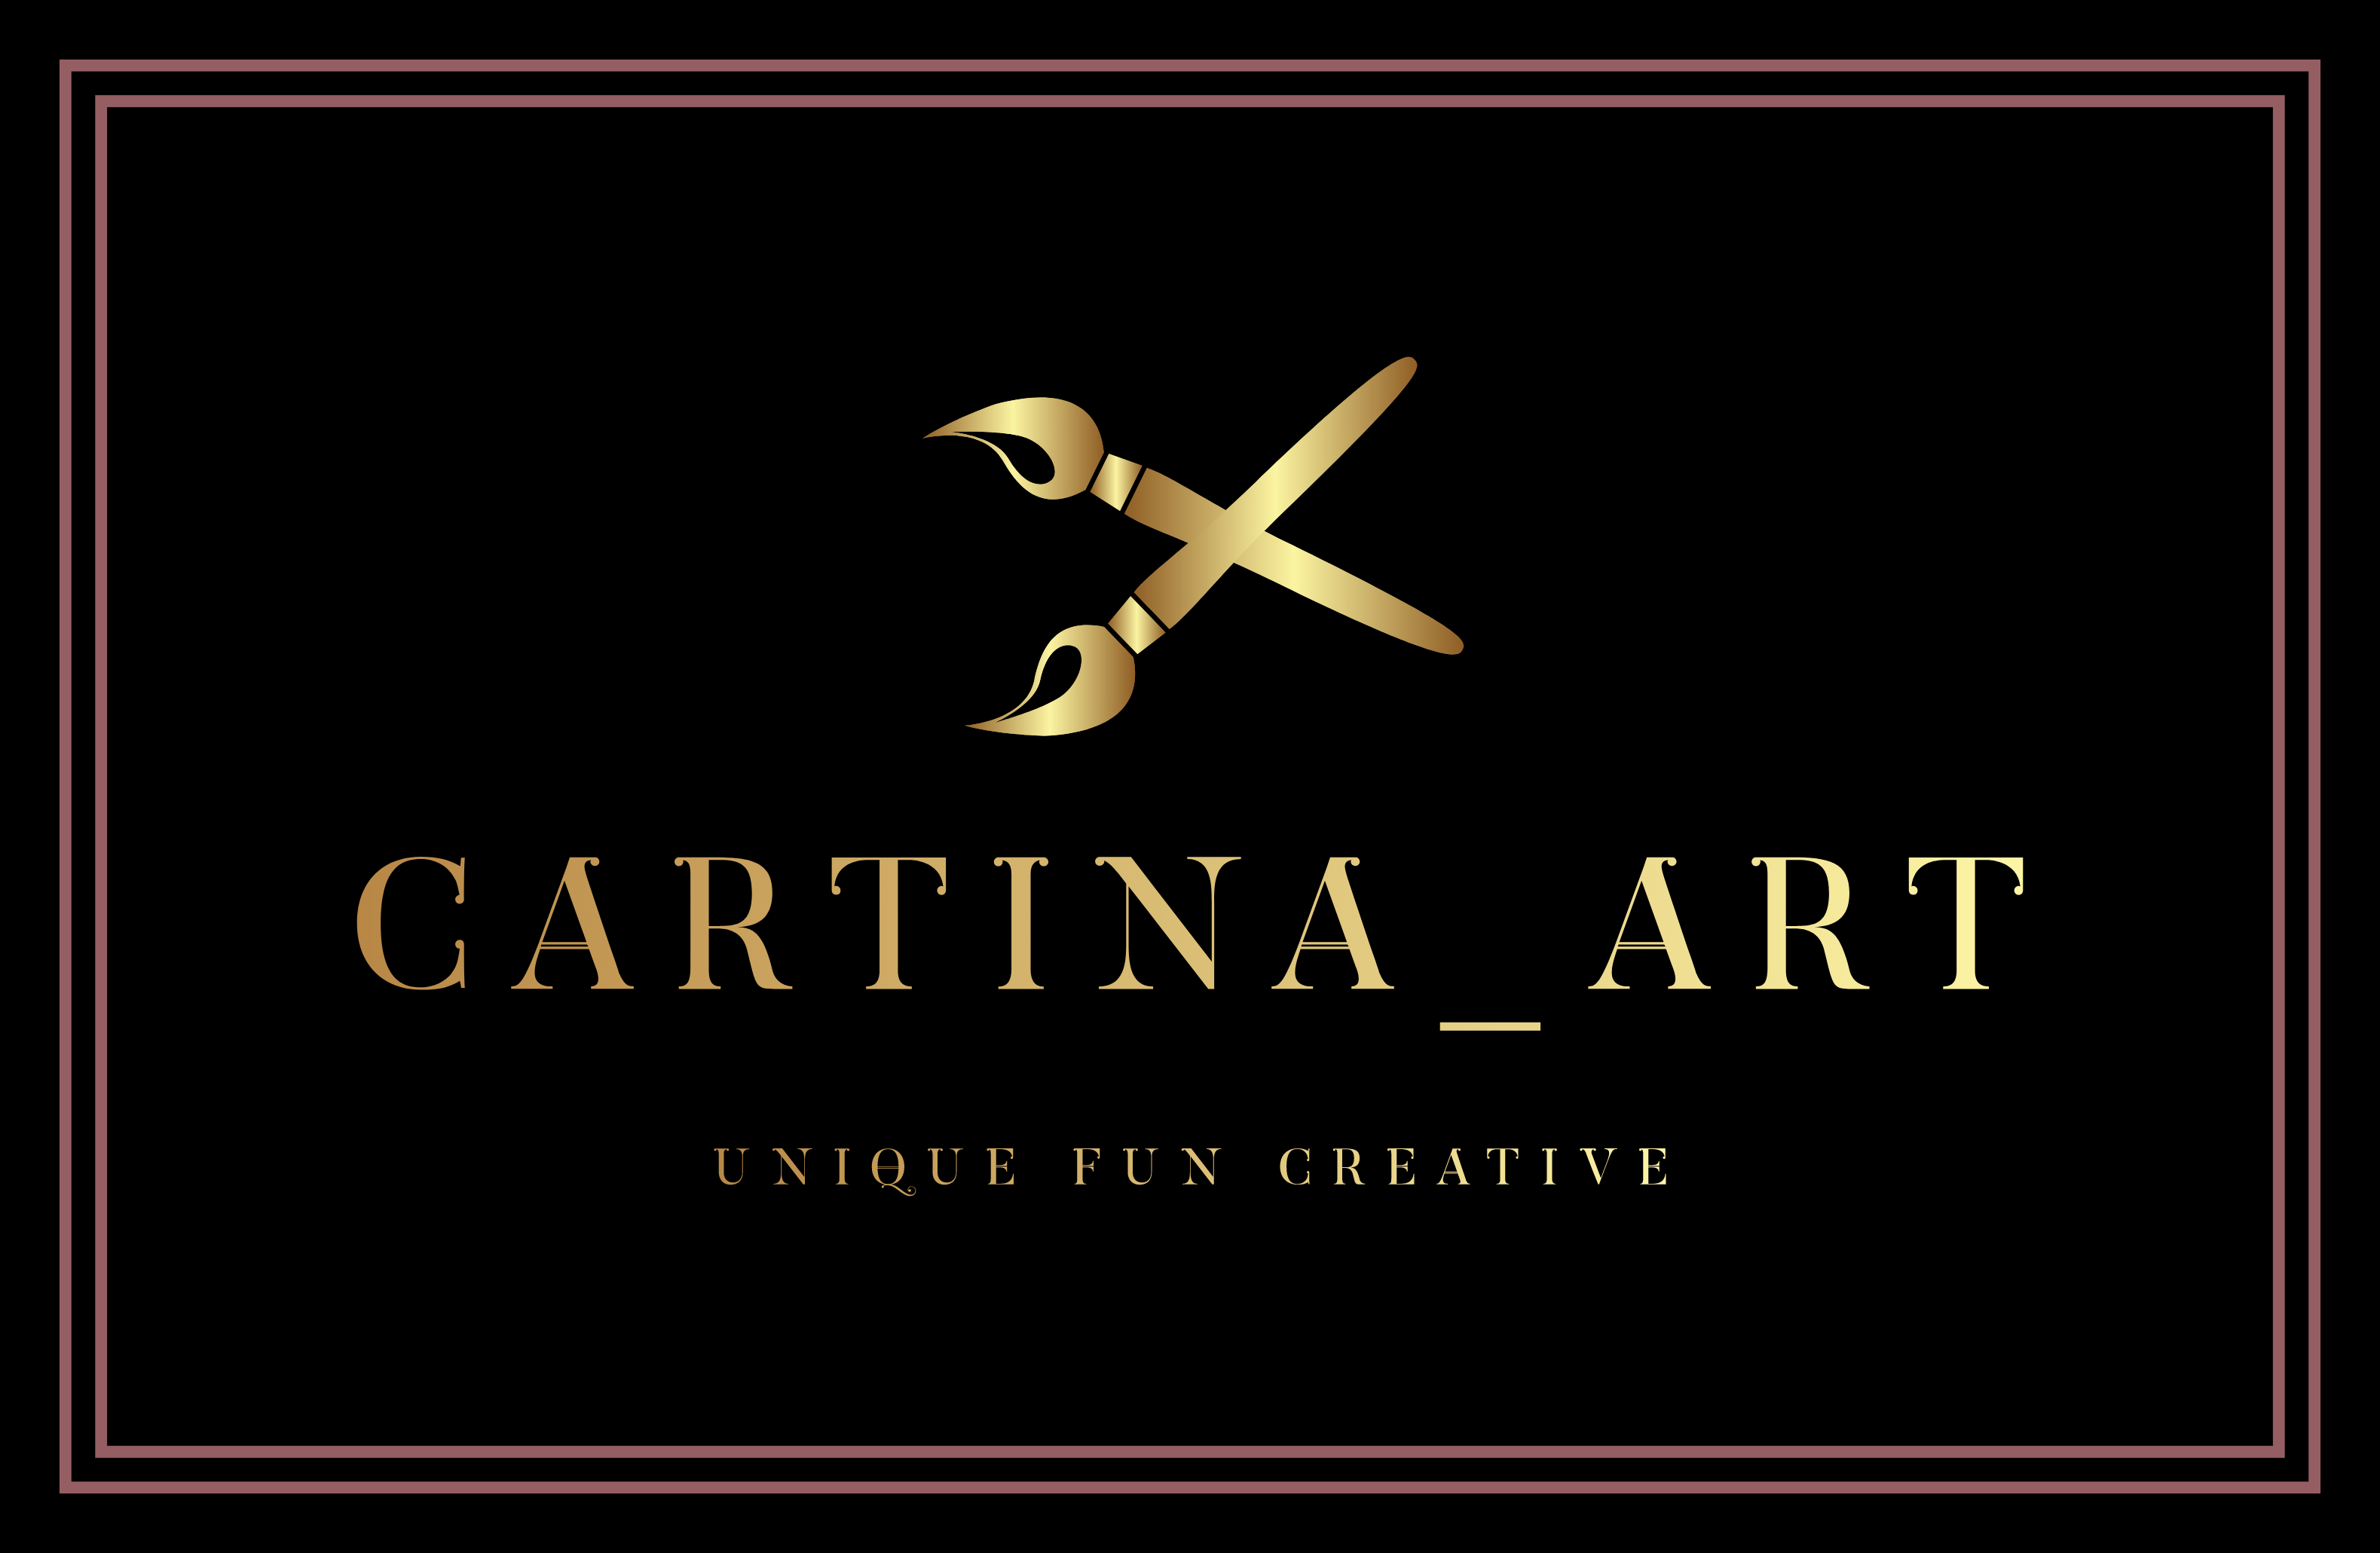 Anitra Carter - Website